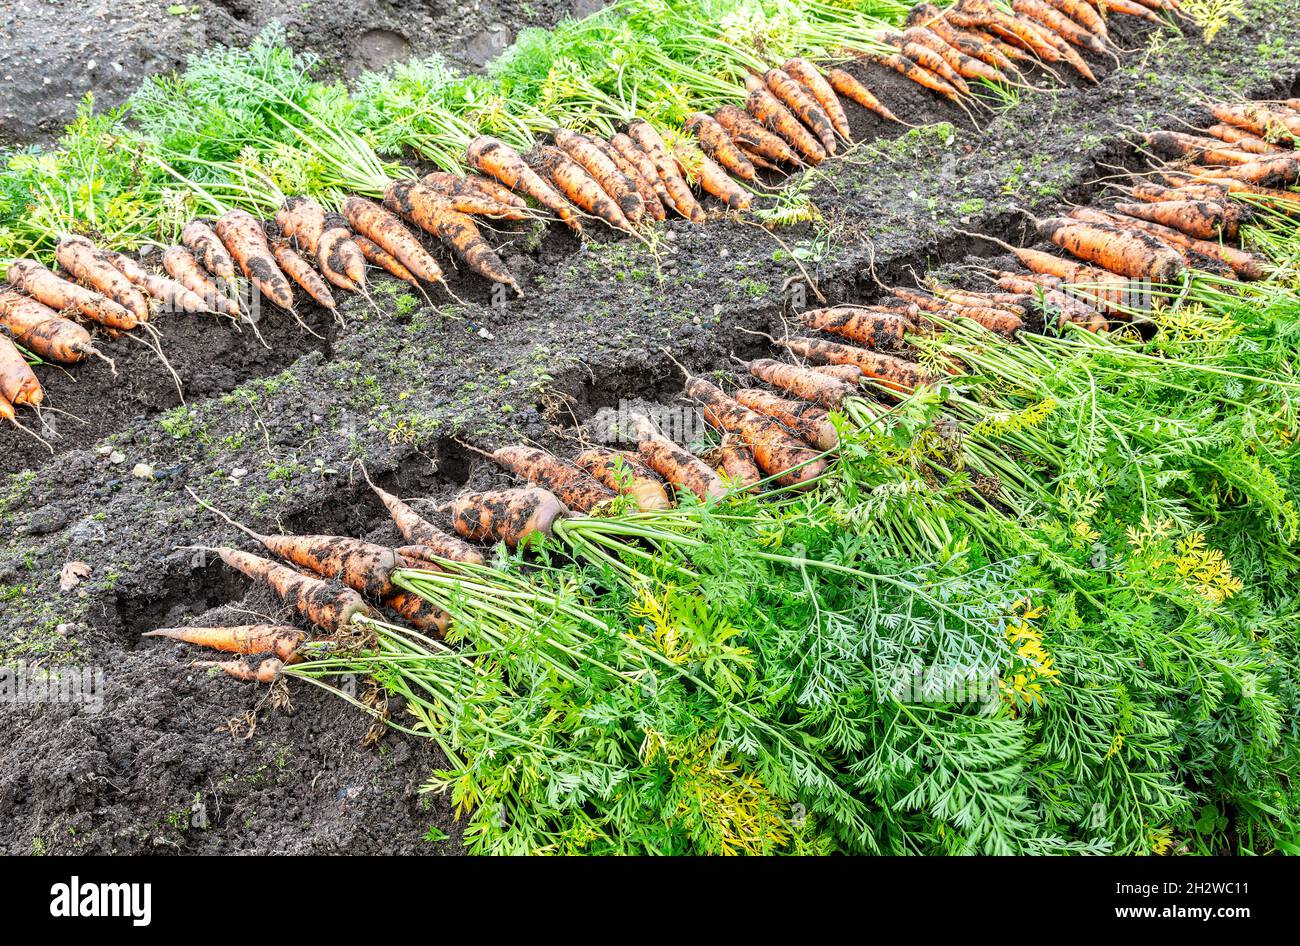 Frisch gegrabene Karotten mit Tops, die auf dem Gartenboden trocknen. Große Bio-saftige ungewaschene Karotten auf einem Feld auf dem Boden in Nahaufnahme Stockfoto